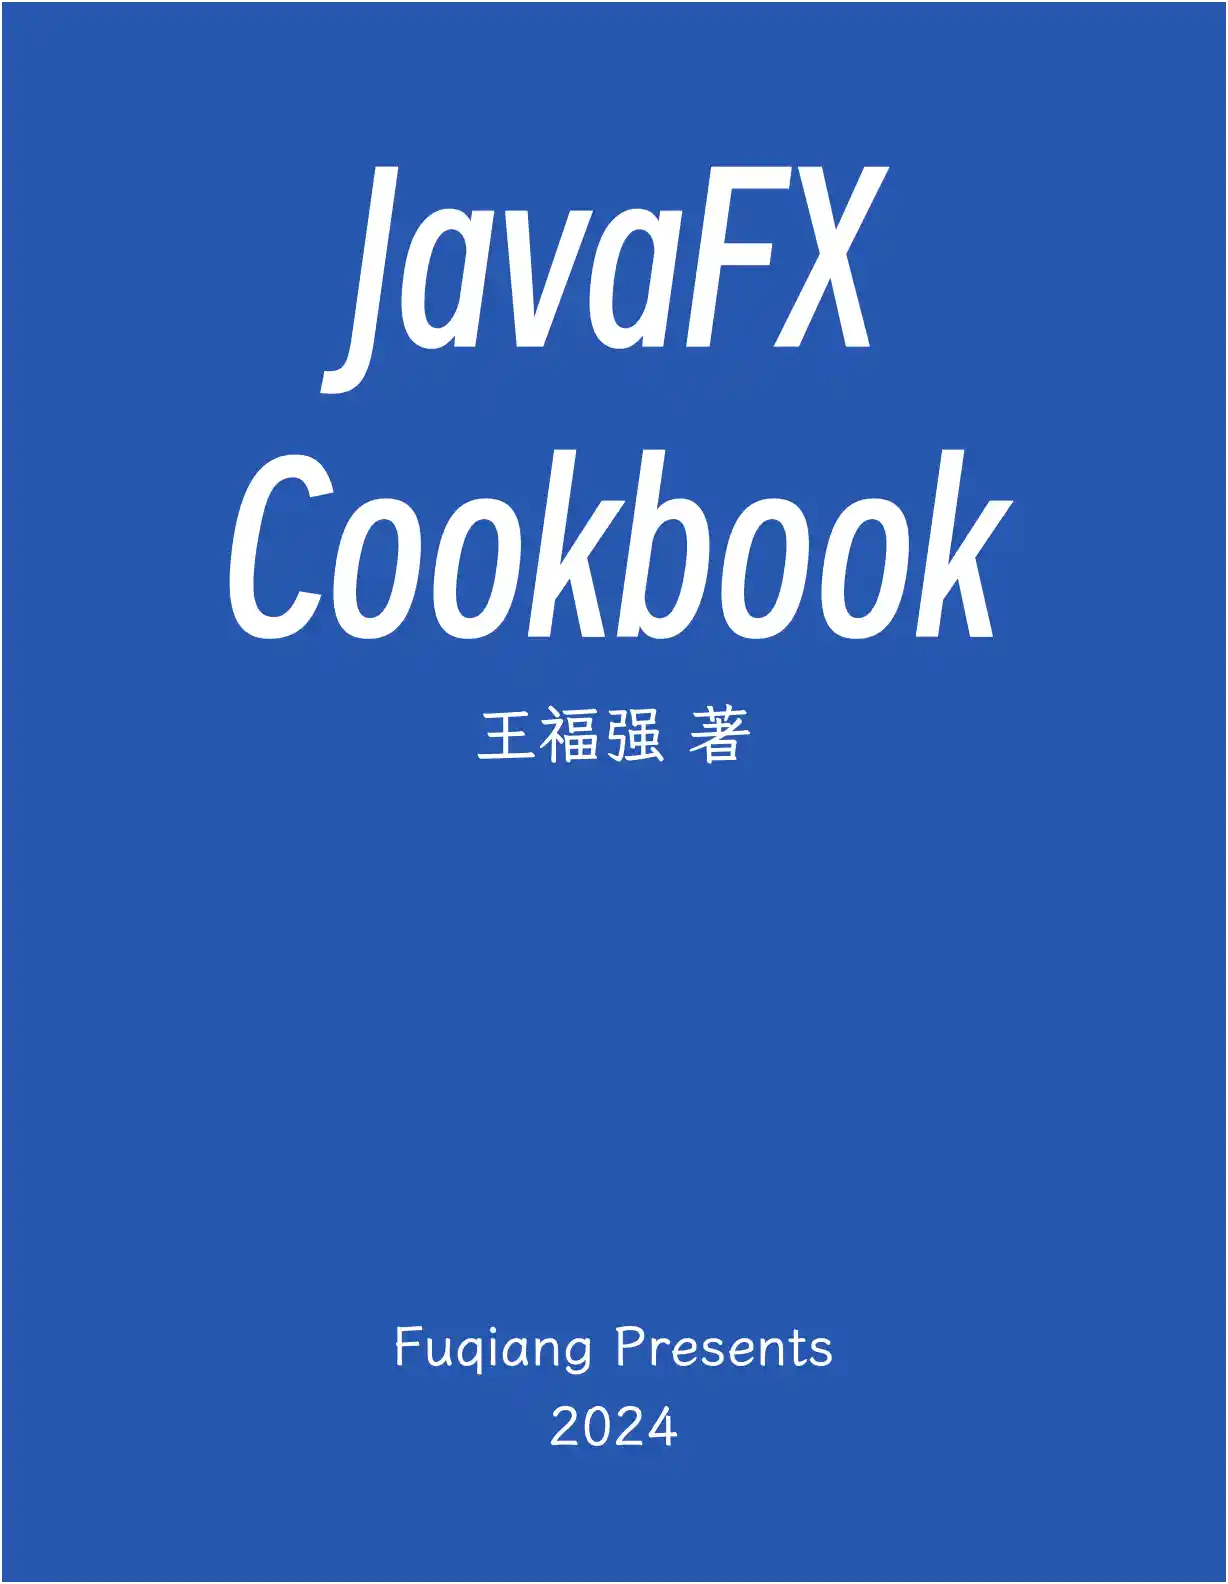  JavaFX图书封面